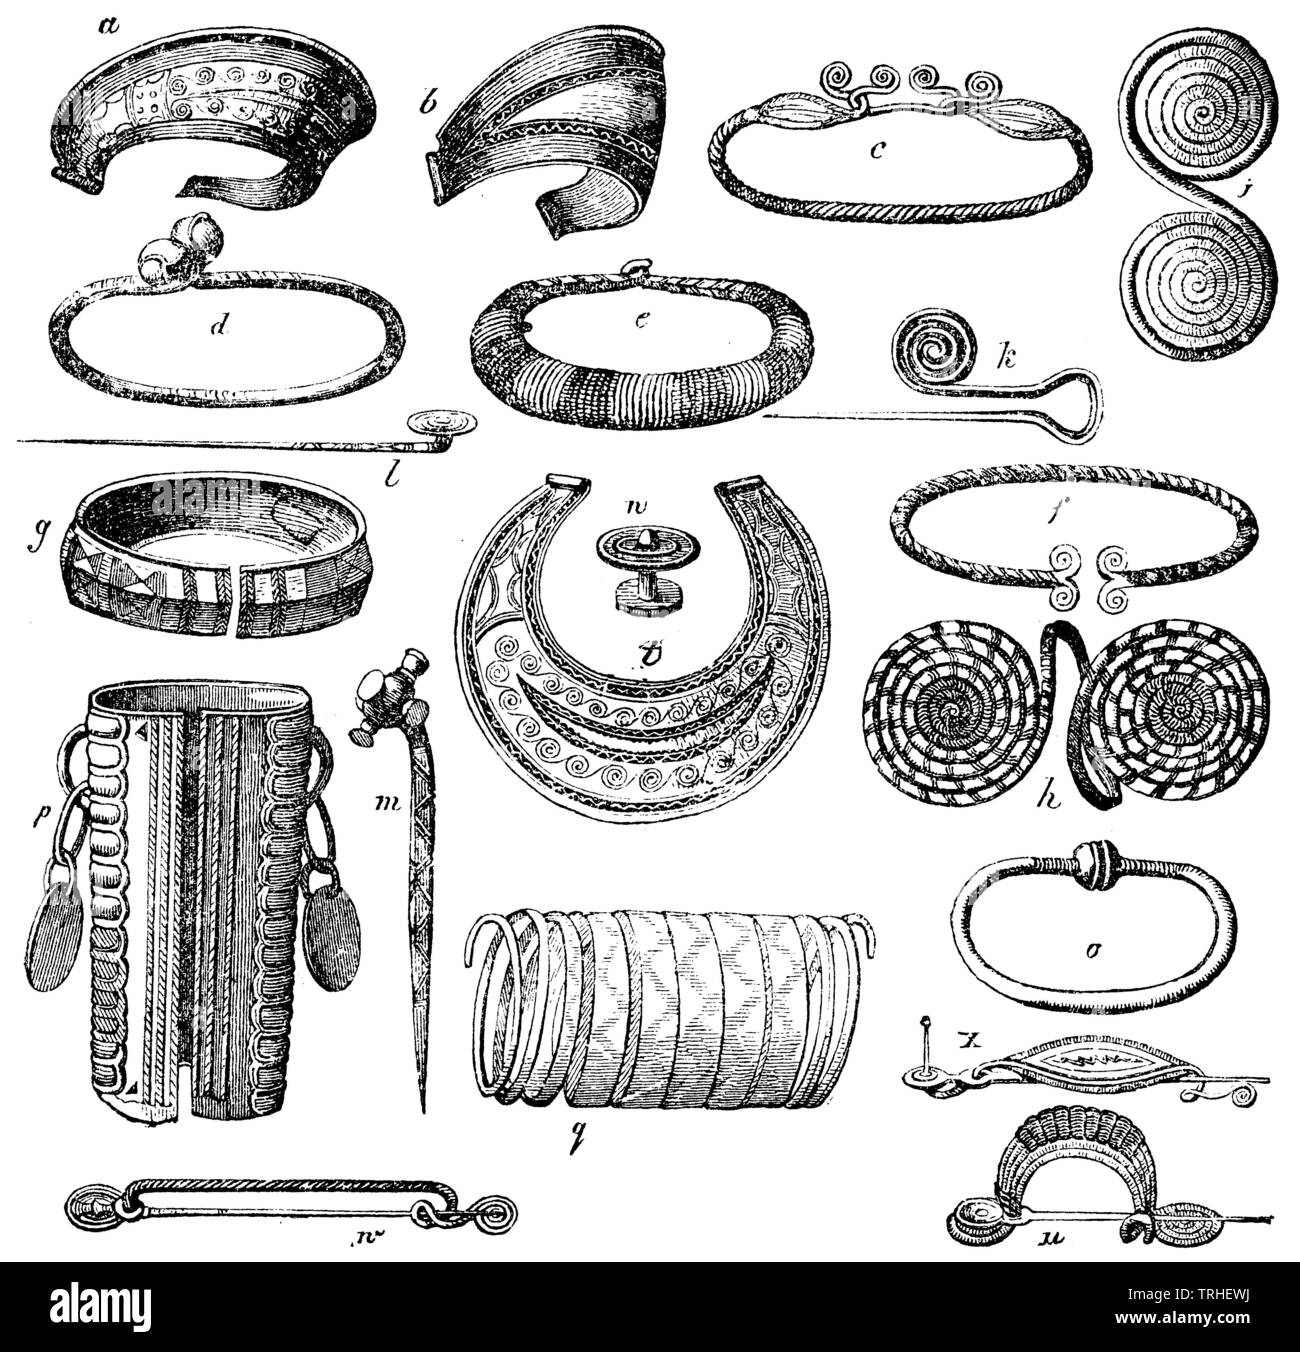 Bronce antiguo joyería. a, b) diademas. c, d e)Cabeza anillos, cuellos. f, g) Muñeca cierres. h, i) Brazo joyas, discos dobles. k, l, m) agujas. n) el doble botón. o) Pulsera de muñeca. p, q), el brazo de joyería. u, w, x) Fibulae, , (Libro de Antropología, 1874) Foto de stock